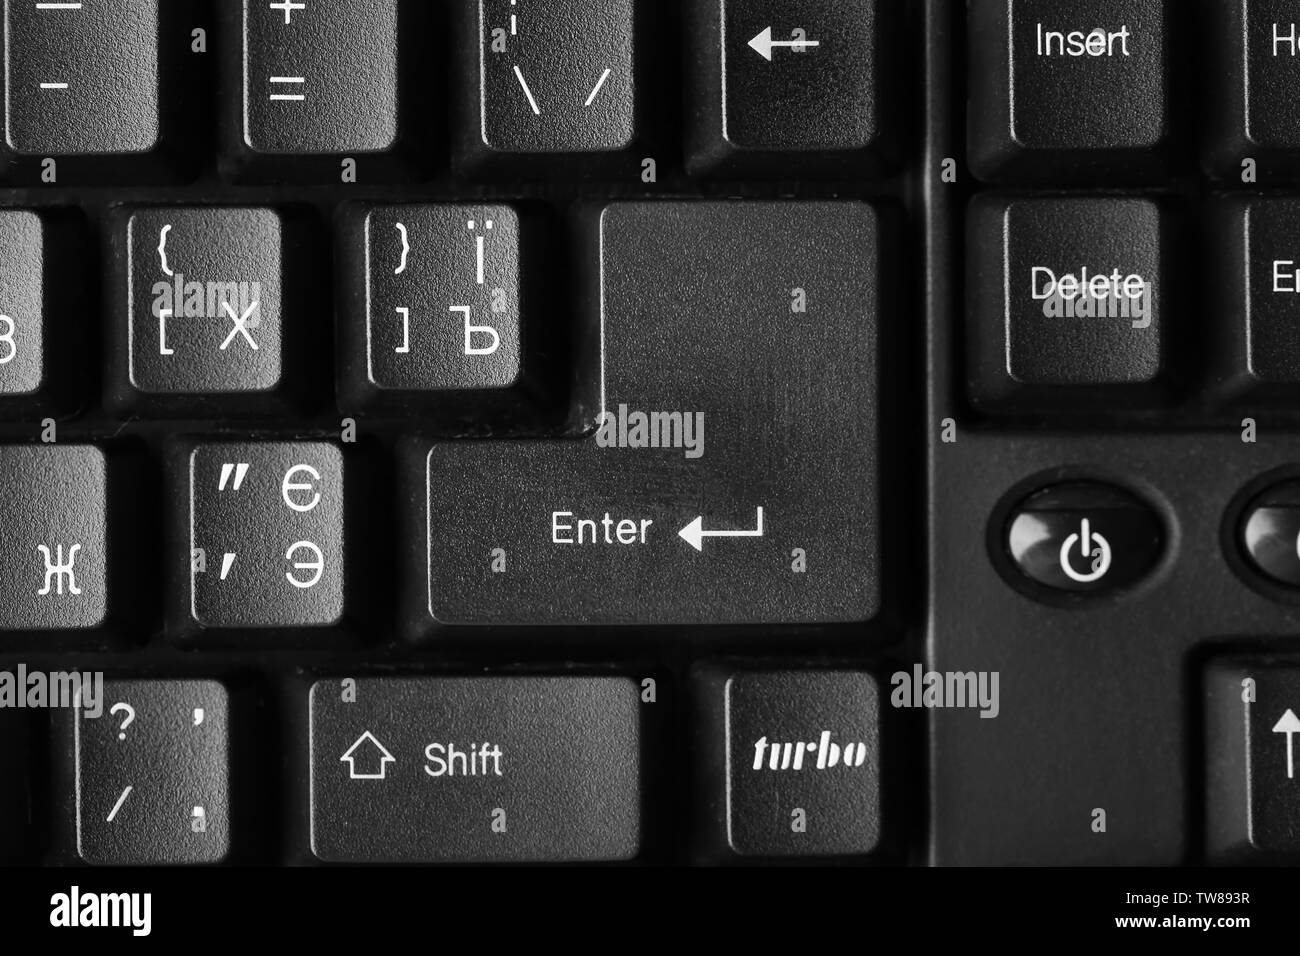 Enter формы. Кнопка шифт на клавиатуре. Shift на клавиатуре компьютера. Клавиша шифт на компьютере. Клавиша шифт на клавиатуре.